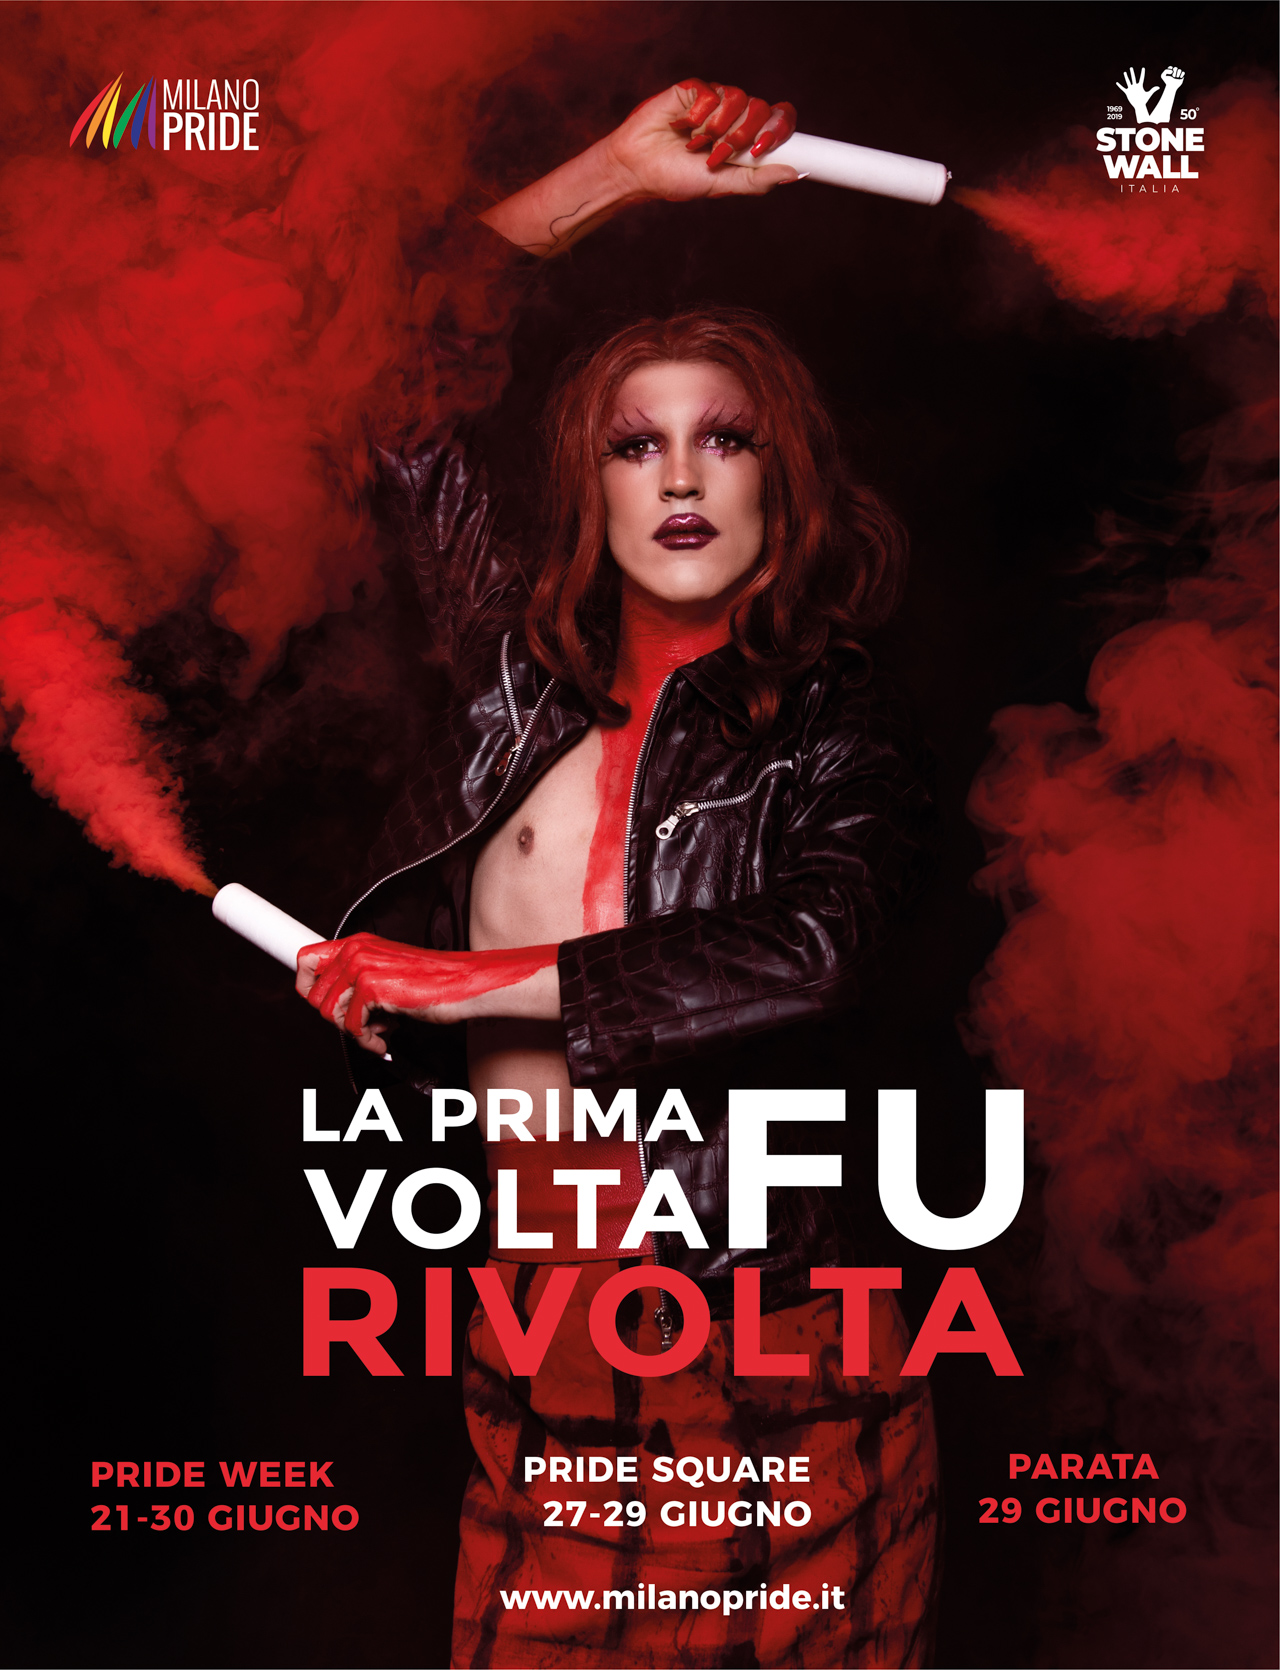 Istituto Italiano di Fotografia e Milano Pride_Campagna 2019_La prima volta fu rivolta